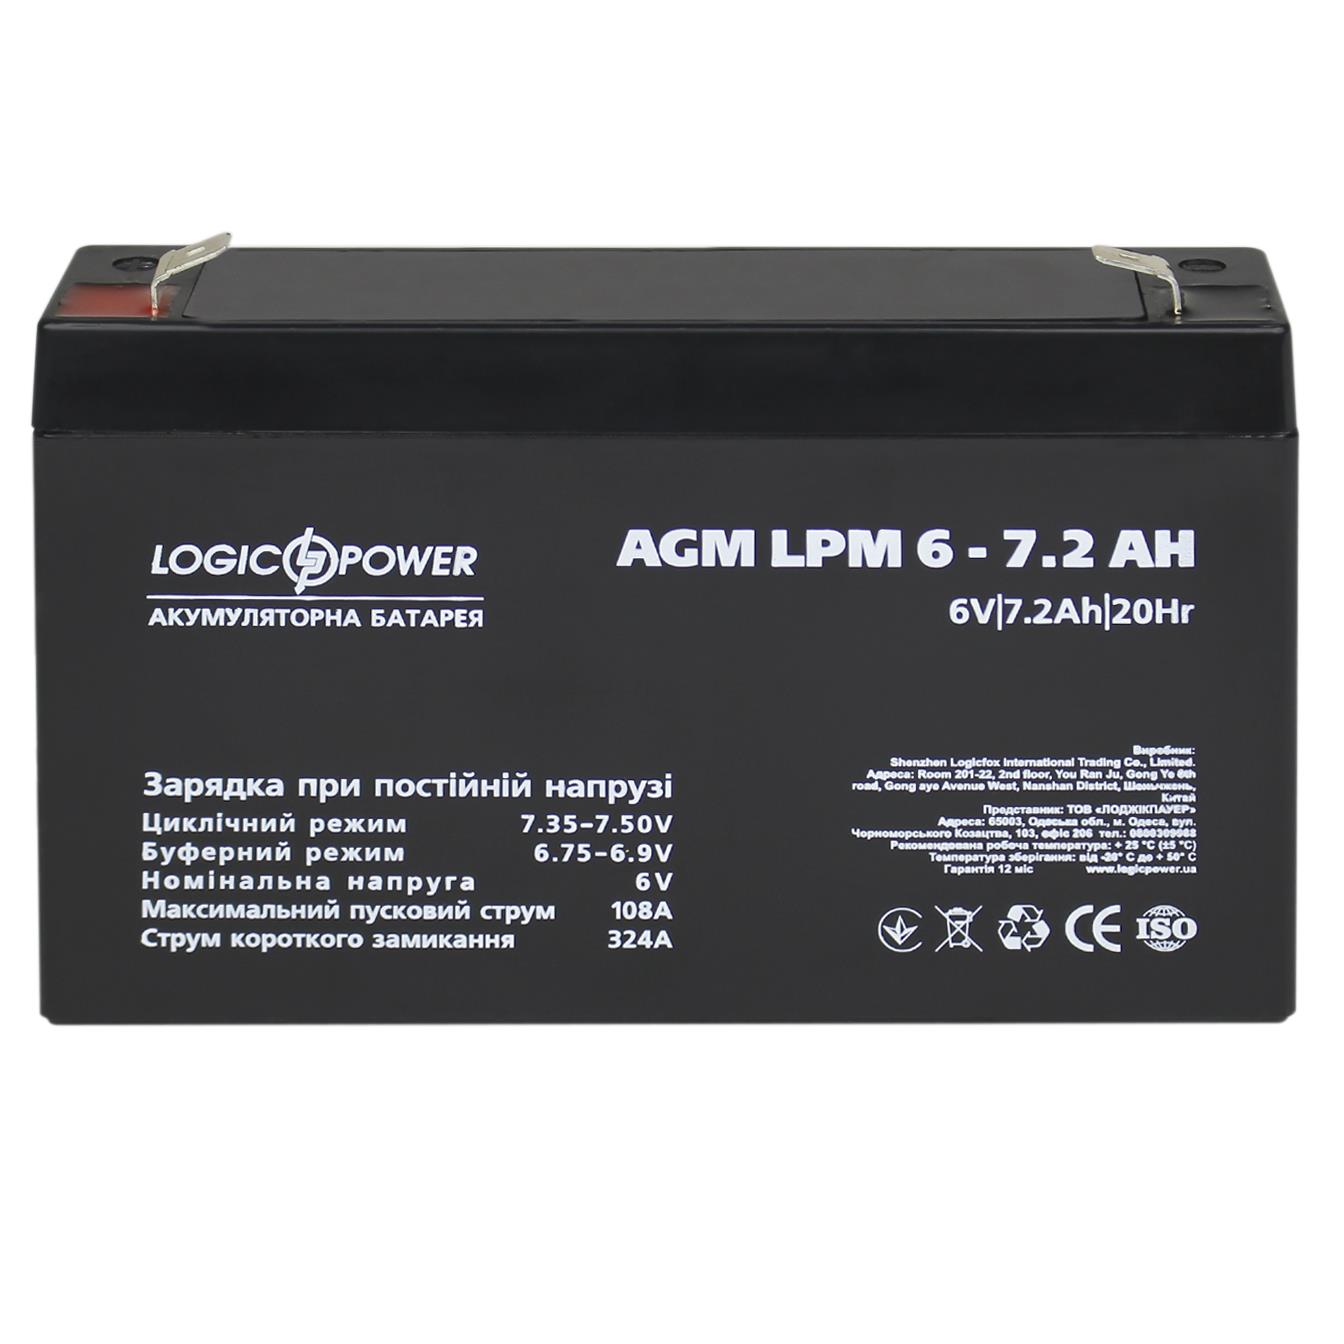 Аккумулятор свинцово-кислотный LogicPower AGM LPM 6V - 7.2 Ah (3859) отзывы - изображения 5